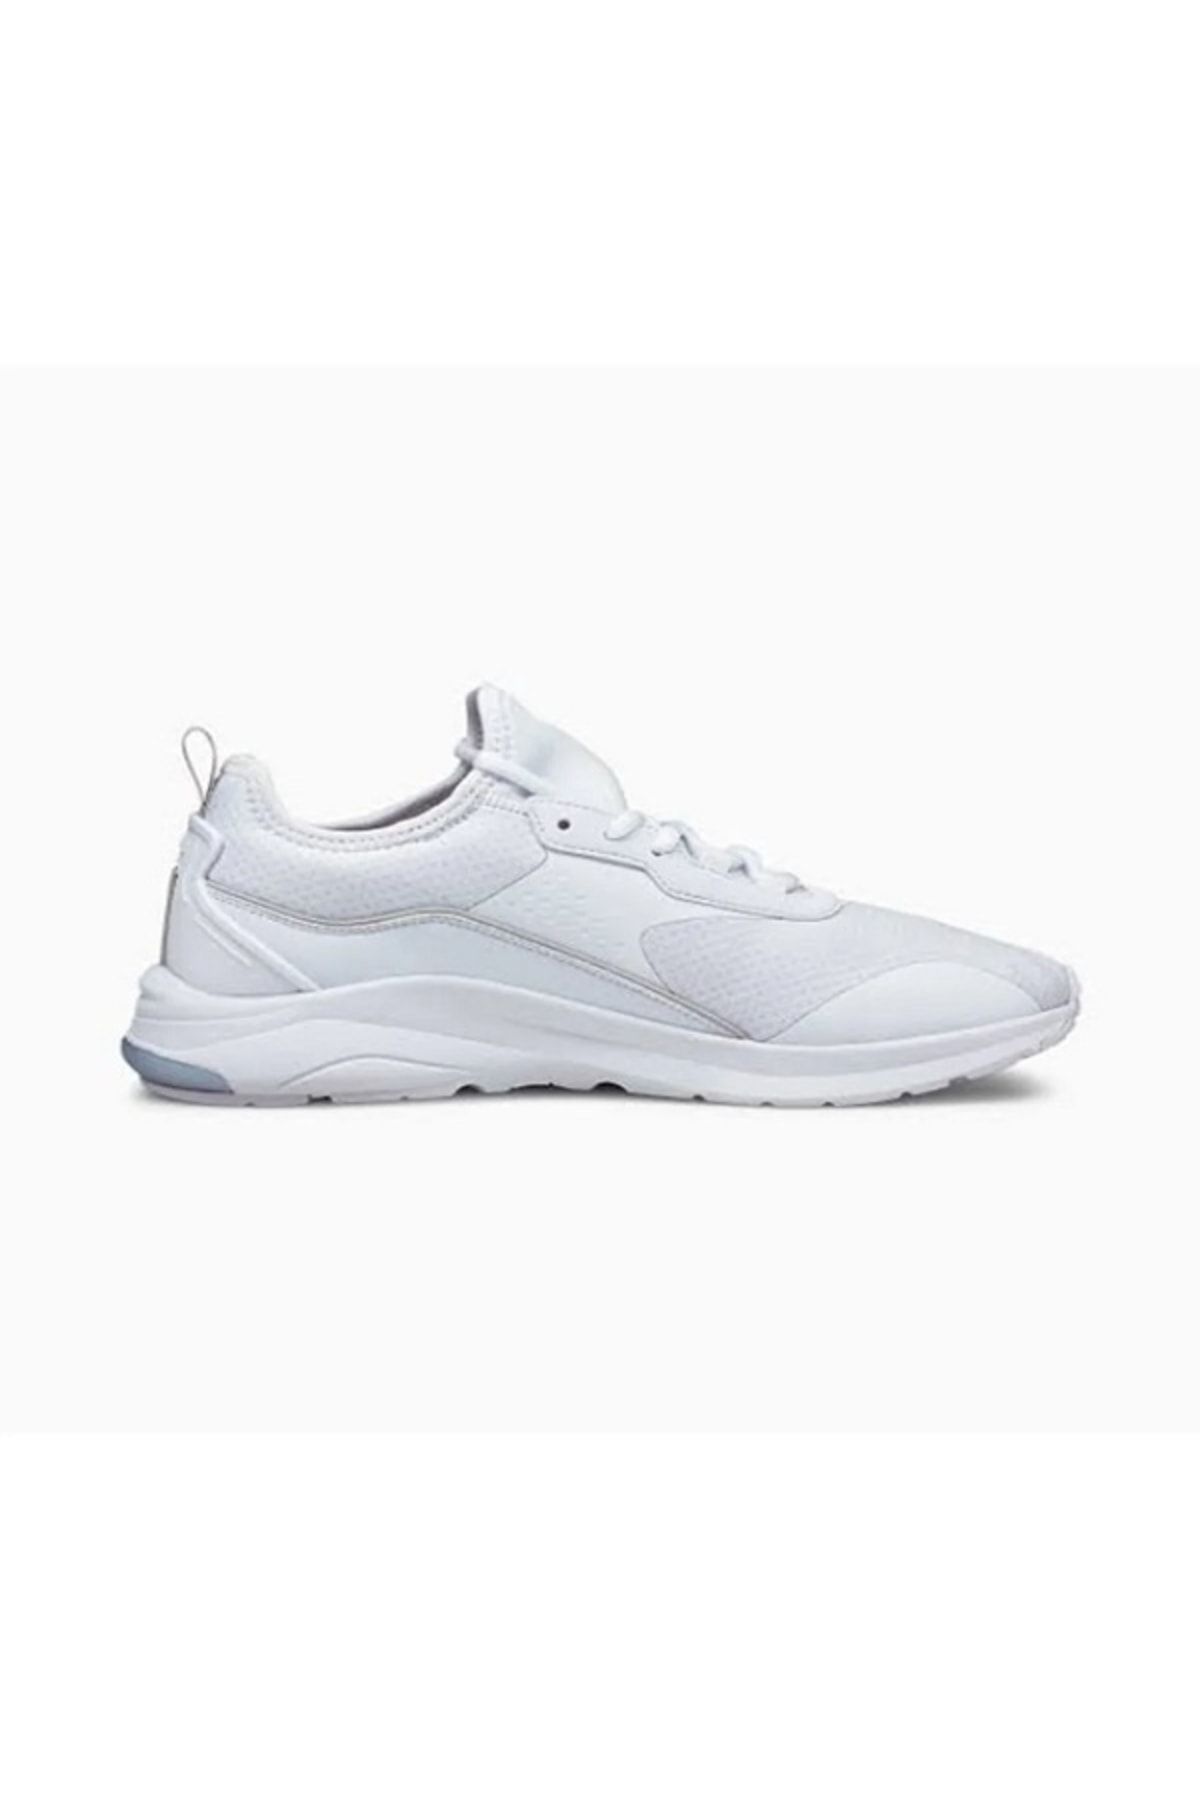 Puma Beyaz Spor Ayakkabı 380209-02 Electron E Pro